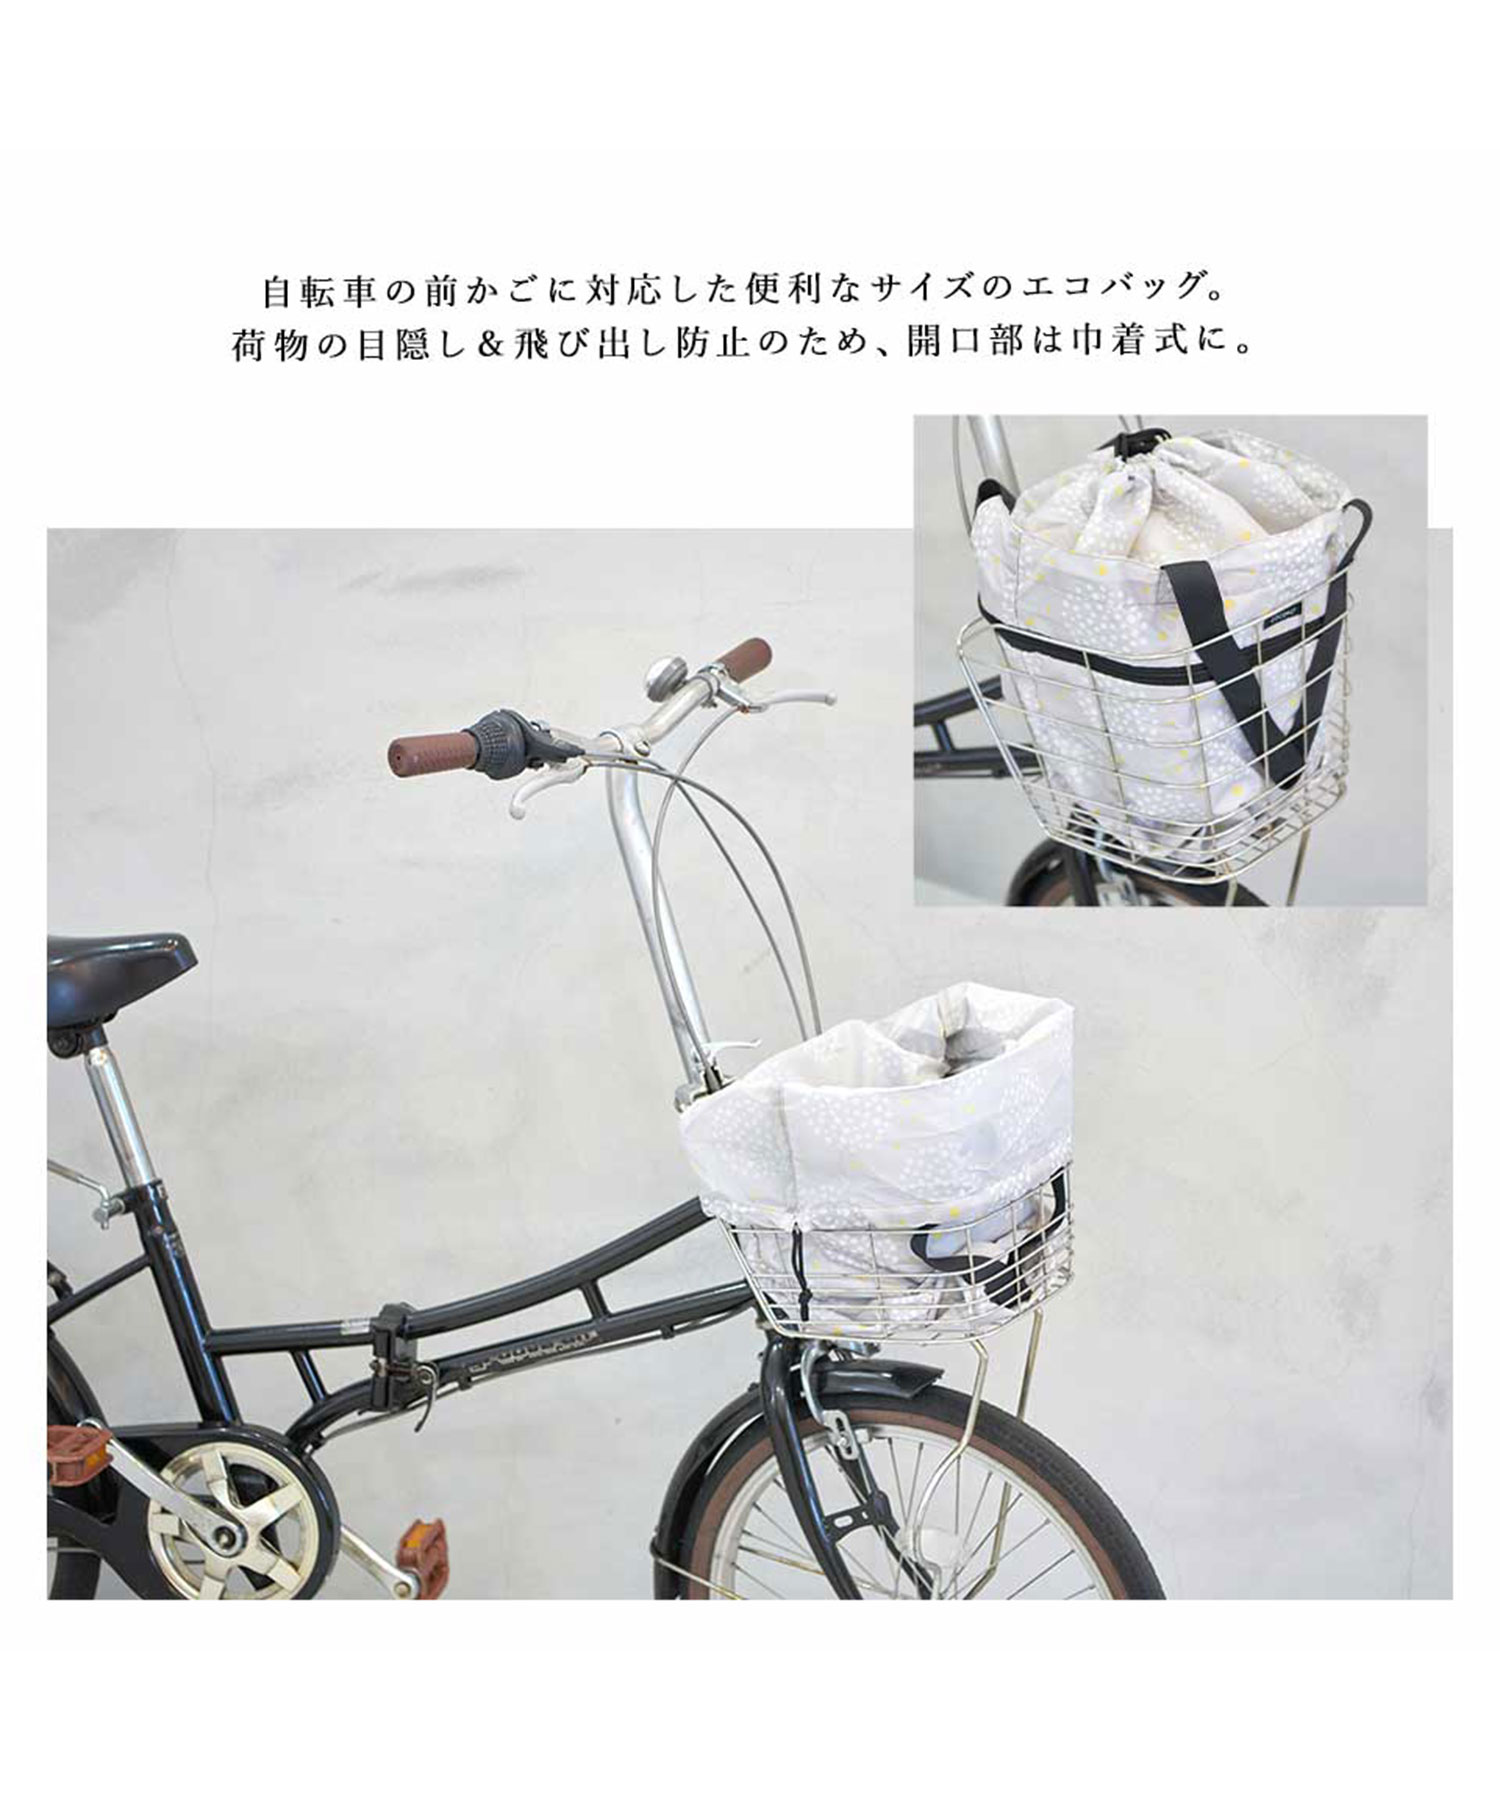 新品未使用 自転車のかごに直接設置するタイプのエコバッグ 売店 - バッグ